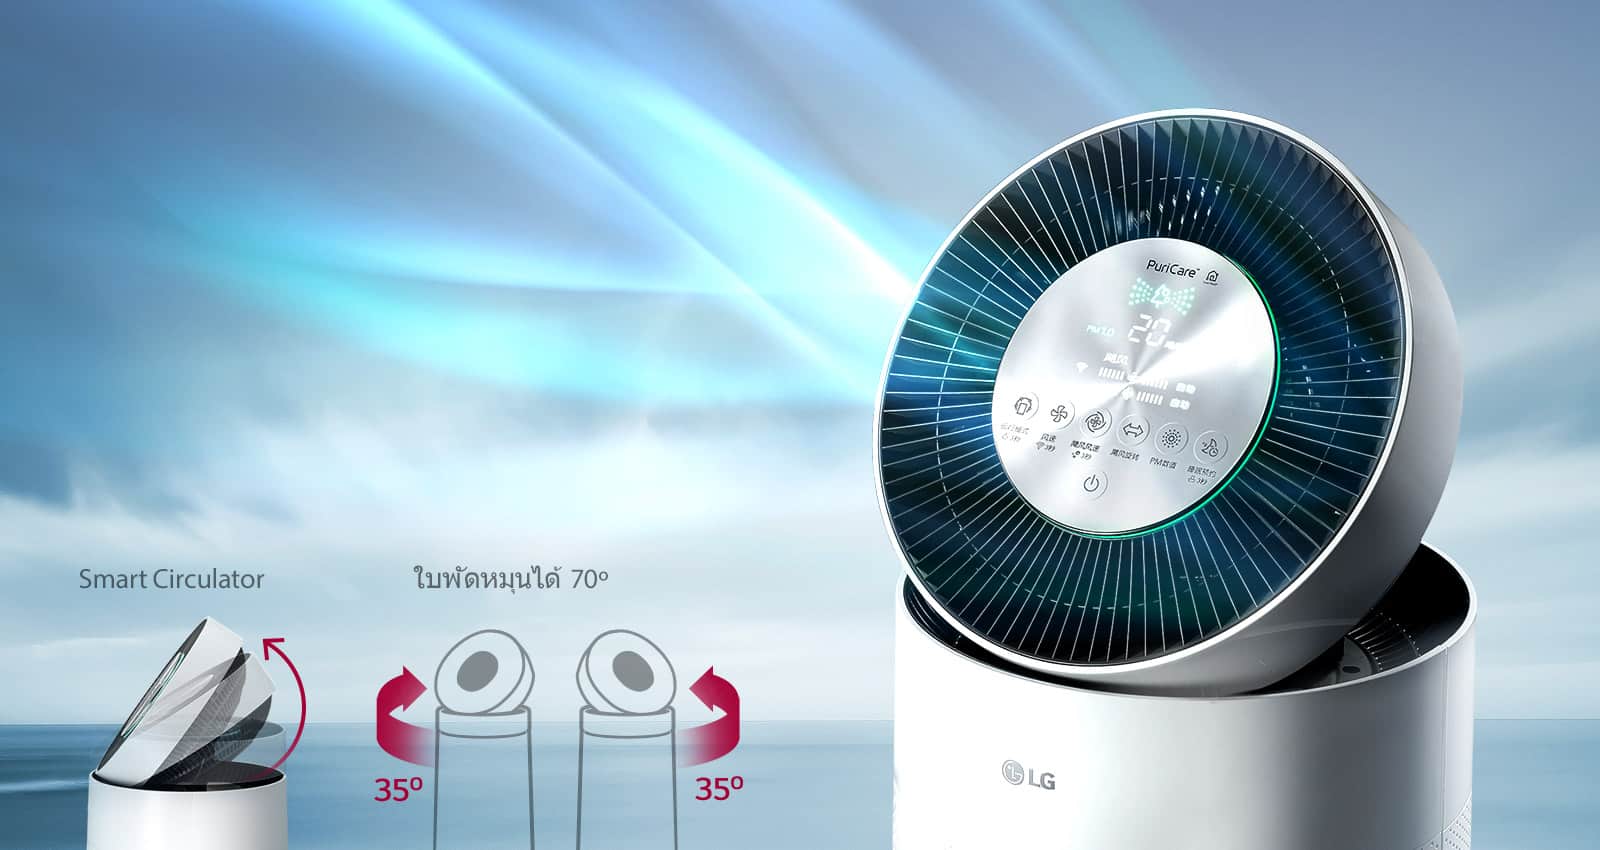 LG นำเสนอนวัตกรรมเครื่องฟอกอากาศ LG PuriCare เพื่อต่อสู้กับวิกฤติฝุ่นในปัจจุบัน 1